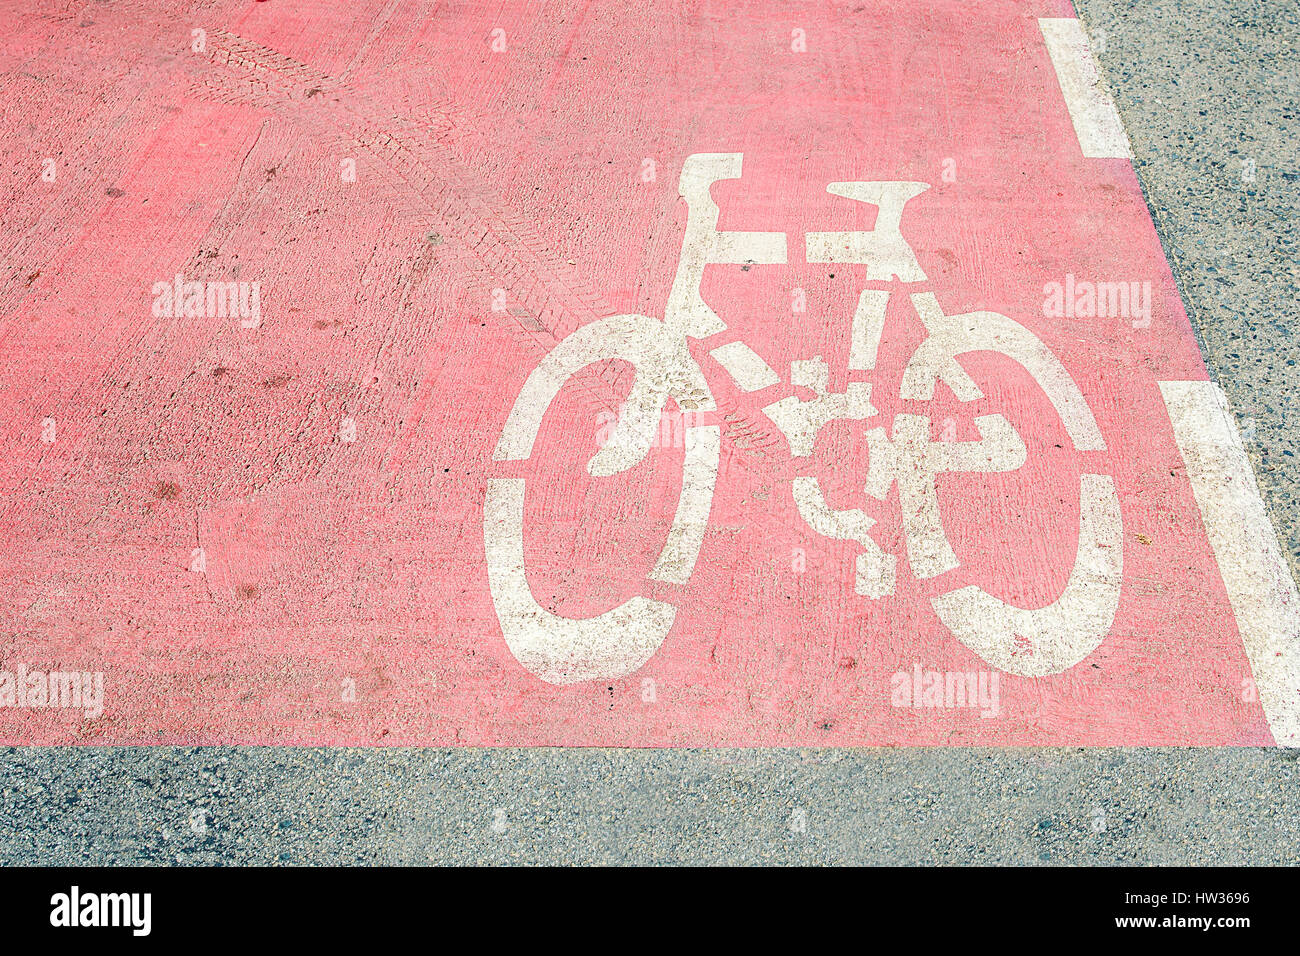 Fahrrad-Symbol in weiß auf einem rosa Asphalt. Radweg - Fahrrad ist Weg ein gutes Zeichen für eine sichere Radfahrer. Stockfoto